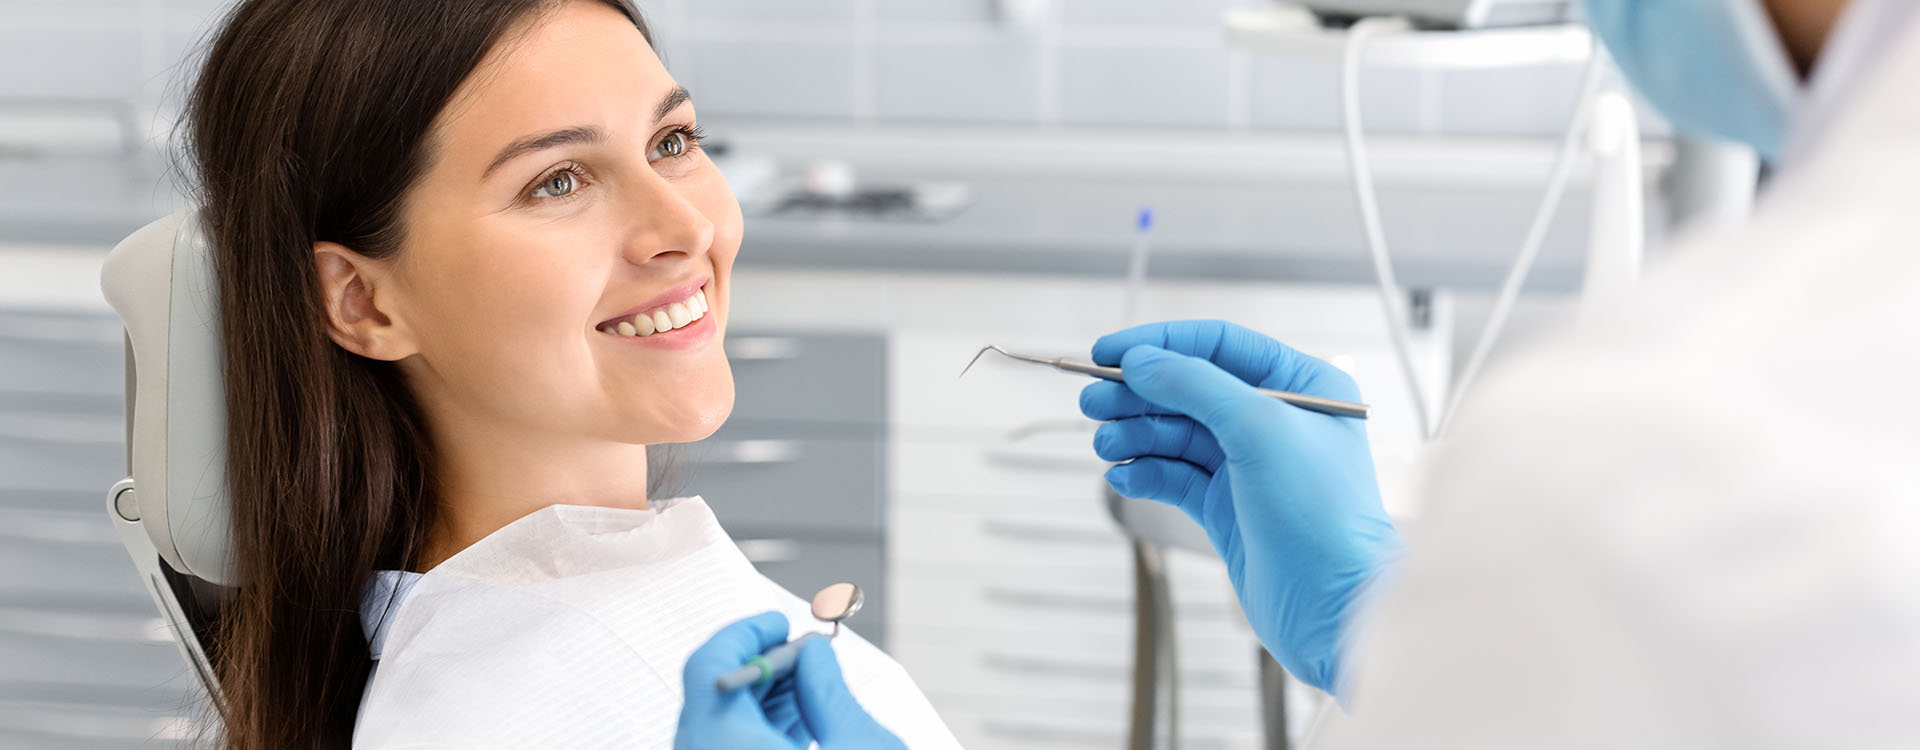 Clínica Dental Andrea Compte, tu Centro Odontológico especializado. Odontología en Traiguera. Mujer realizándose tratamiento en clínica dental.